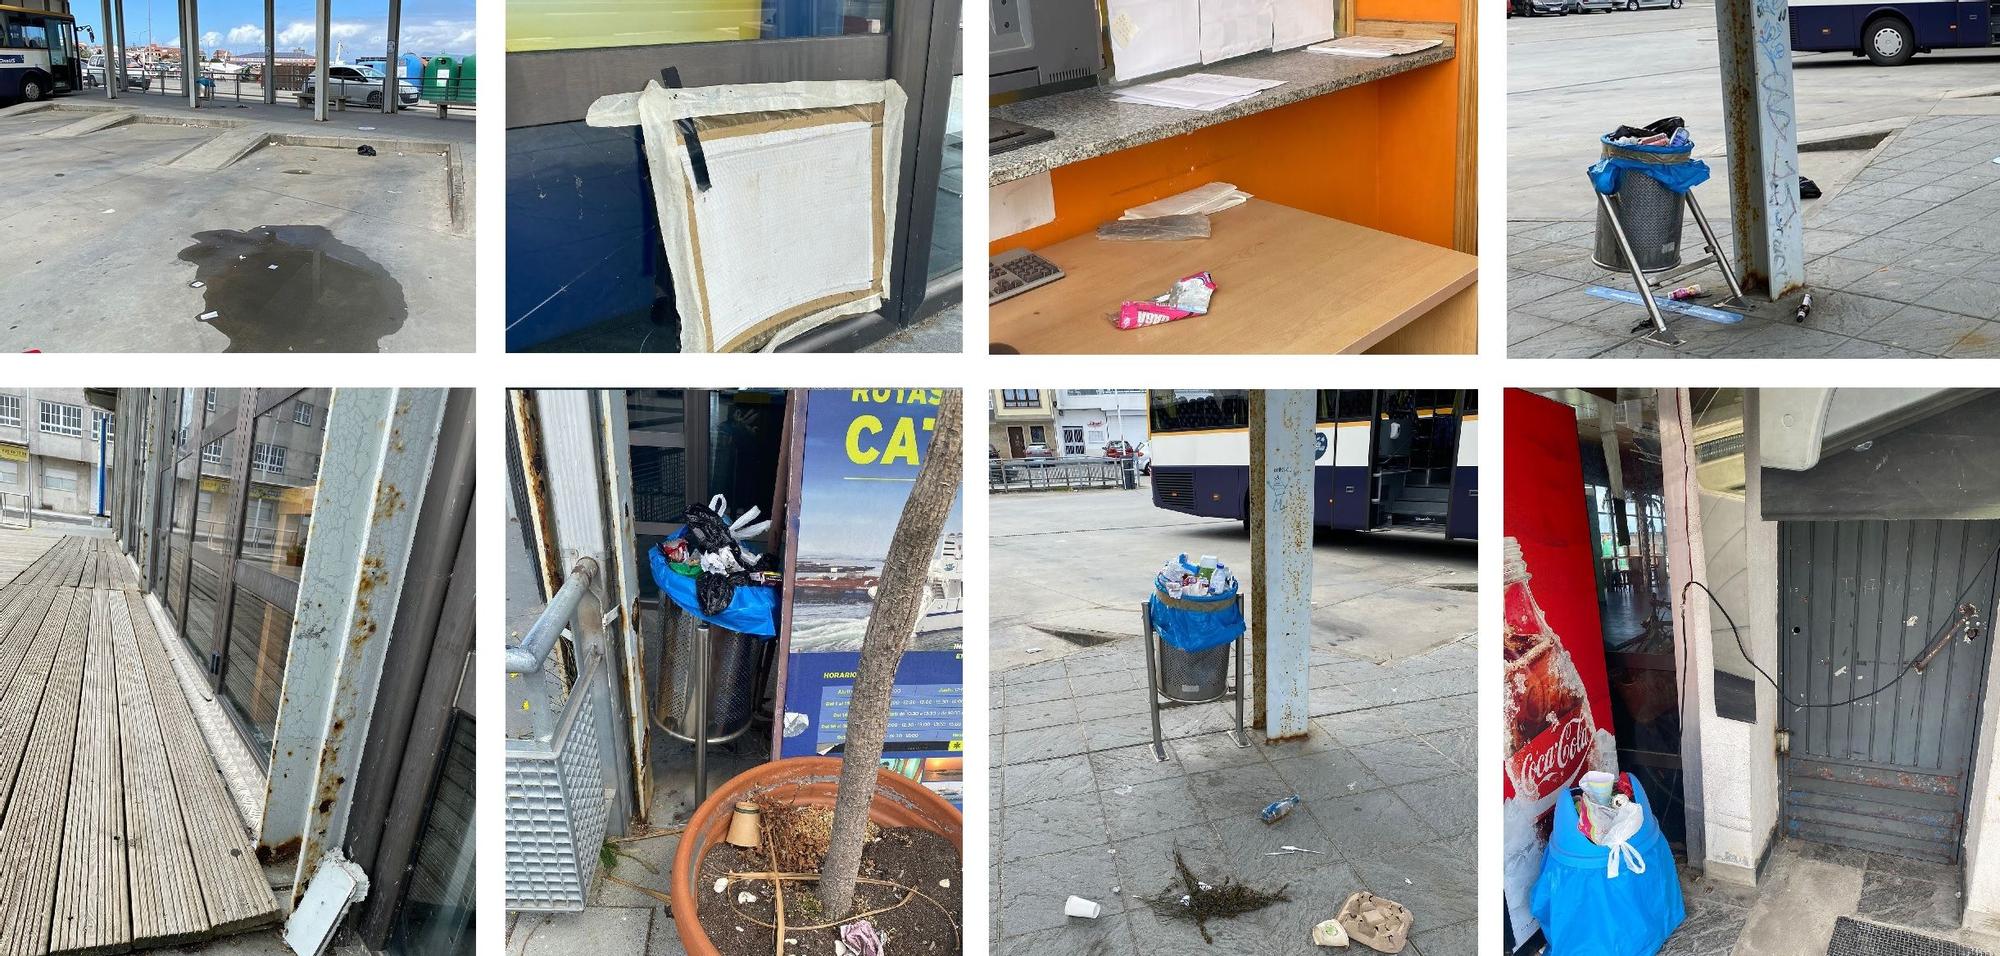 Fotografías aportadas por Esquerda Unida para denunciar la situación de abandono que se vive en la estación de autobuses grovense.